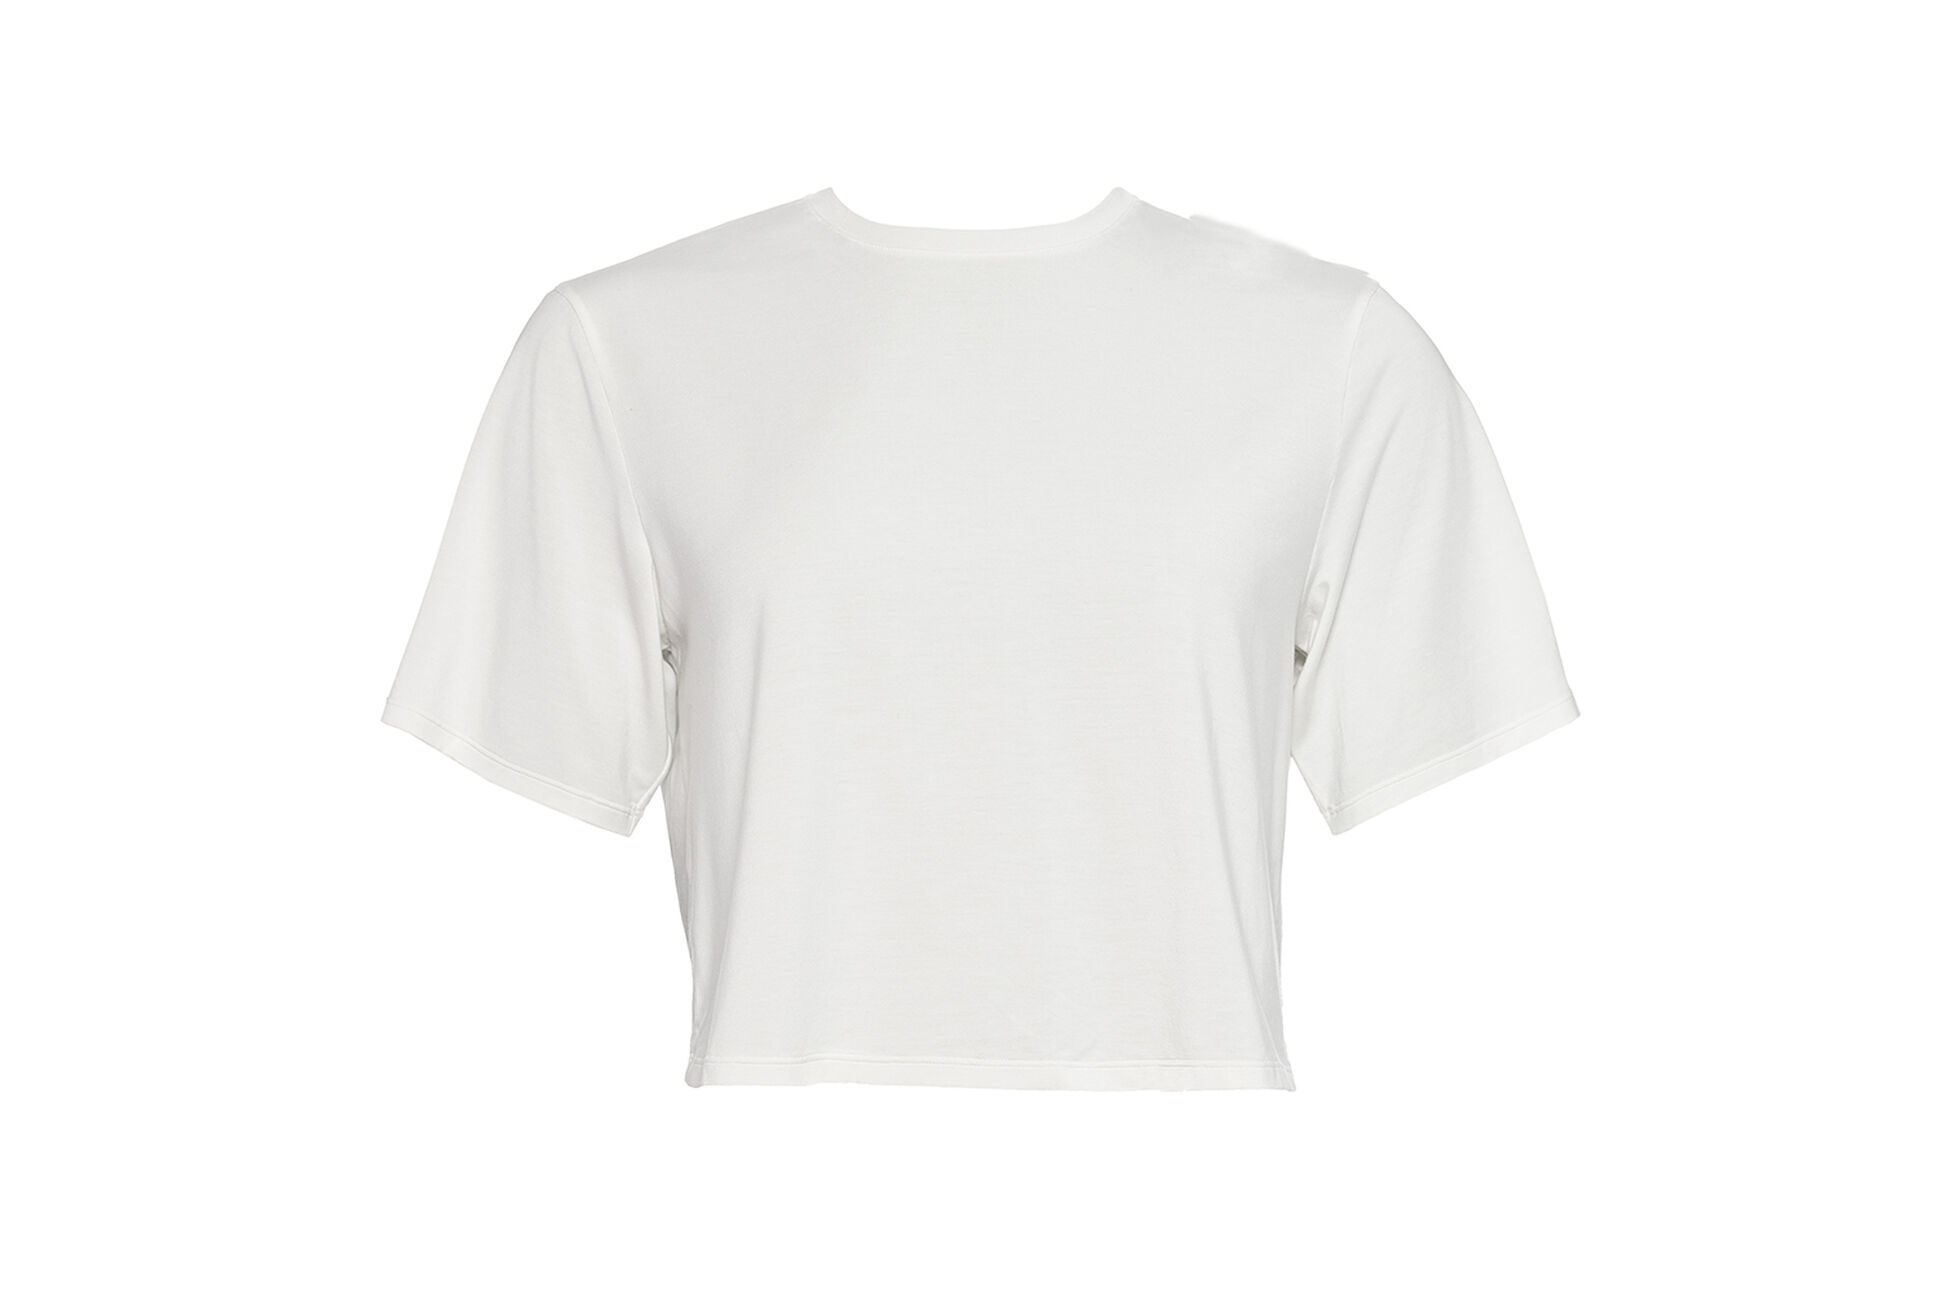 Félicia Camiseta Vista estándar NaN